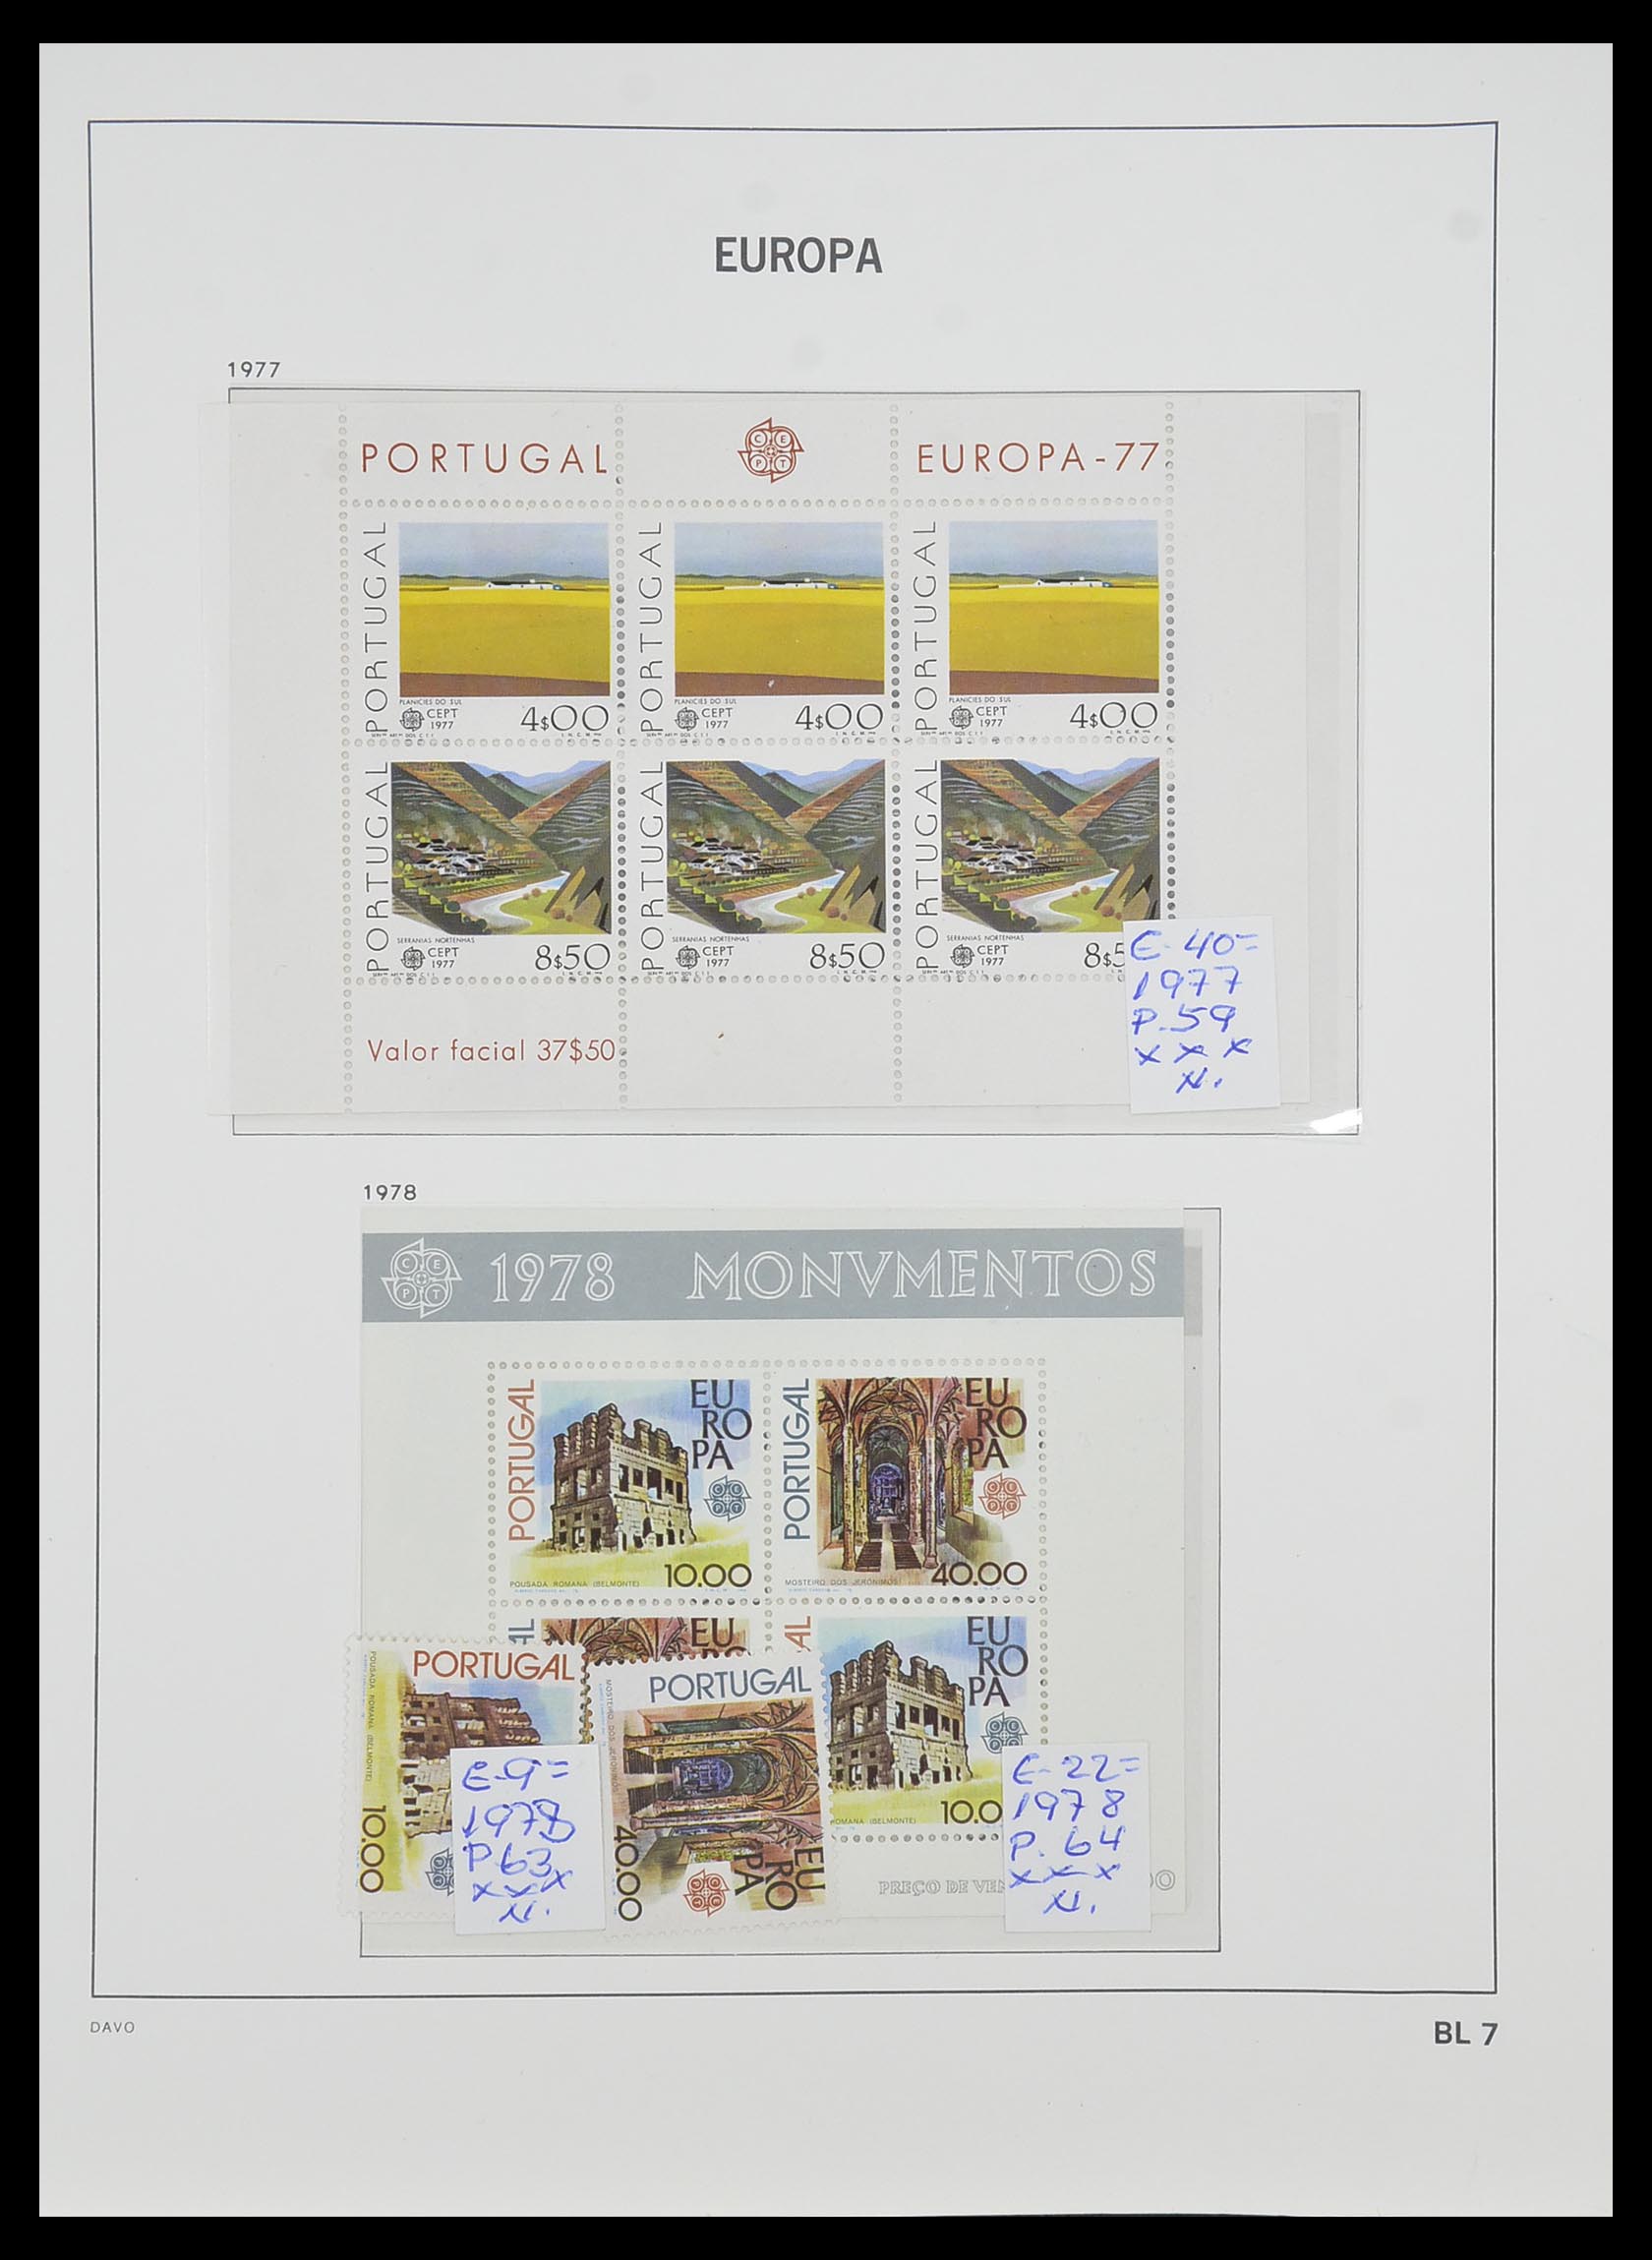 33985 007 - Stamp collection 33985 Europa CEPT souvenir sheets 1974-2014.